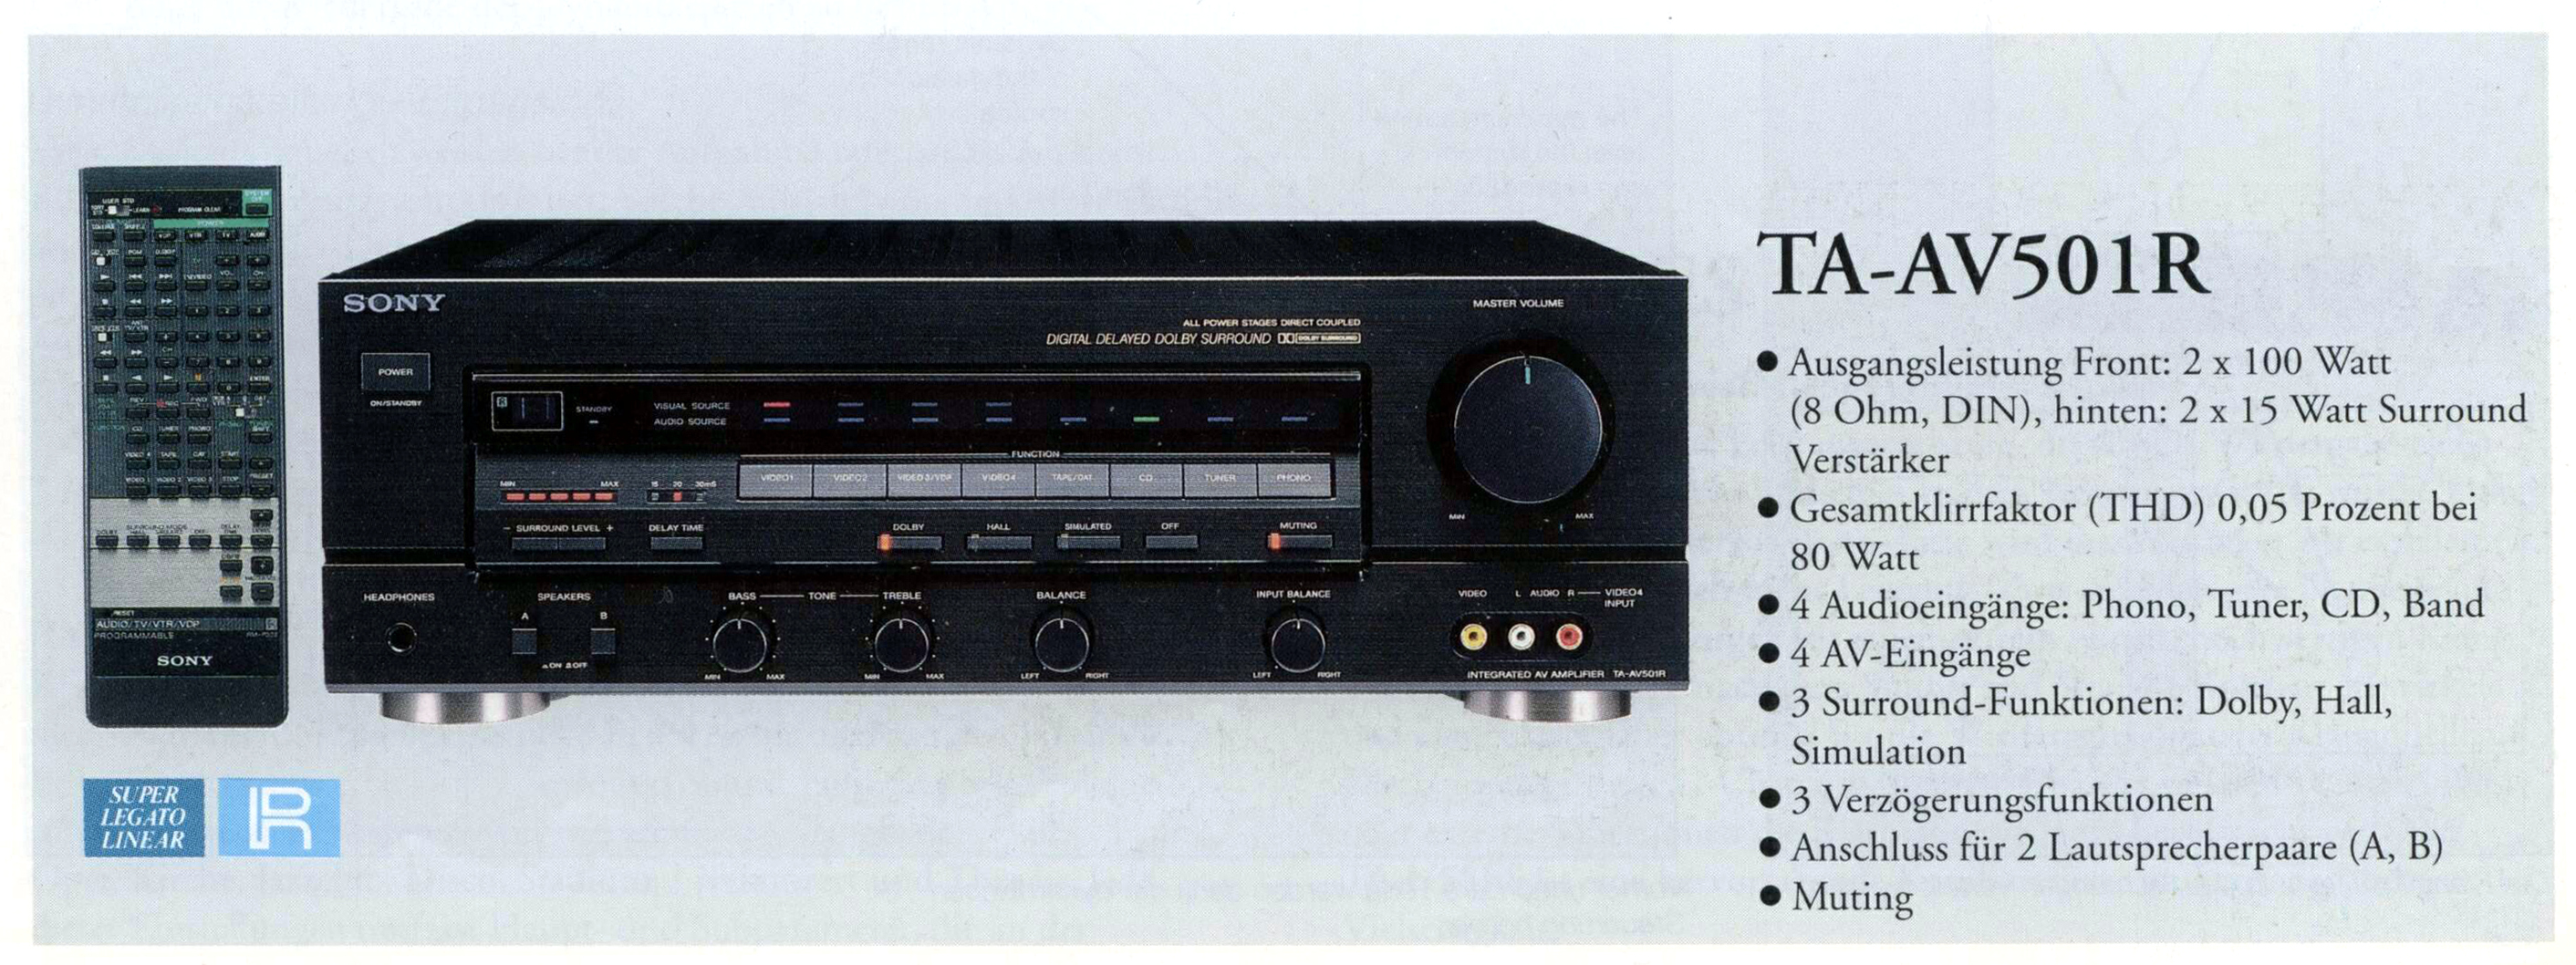 Sony TA-AV 501 R-Prospekt-1991.jpg